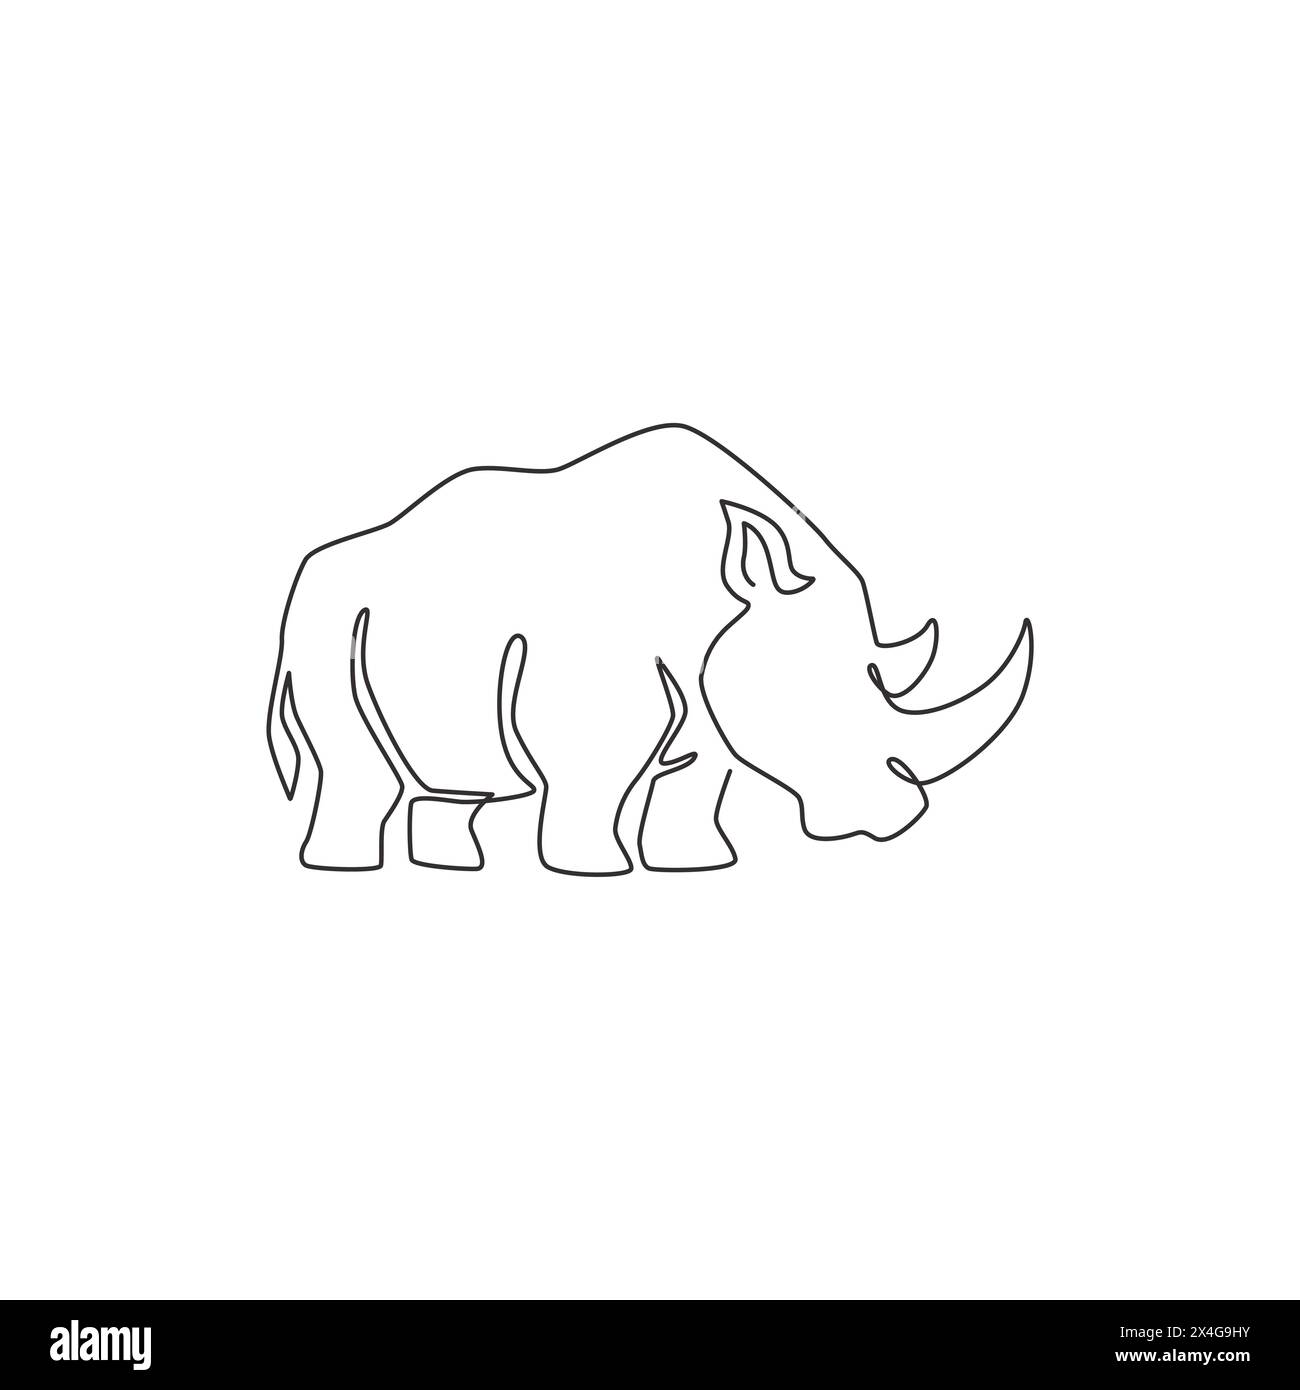 Un dessin de ligne continue de rhinocéros blanc fort pour l'identité du logo de l'entreprise. Concept de mascotte d'animaux rhinocéros africains pour safari zoologique national. Simple Illustration de Vecteur